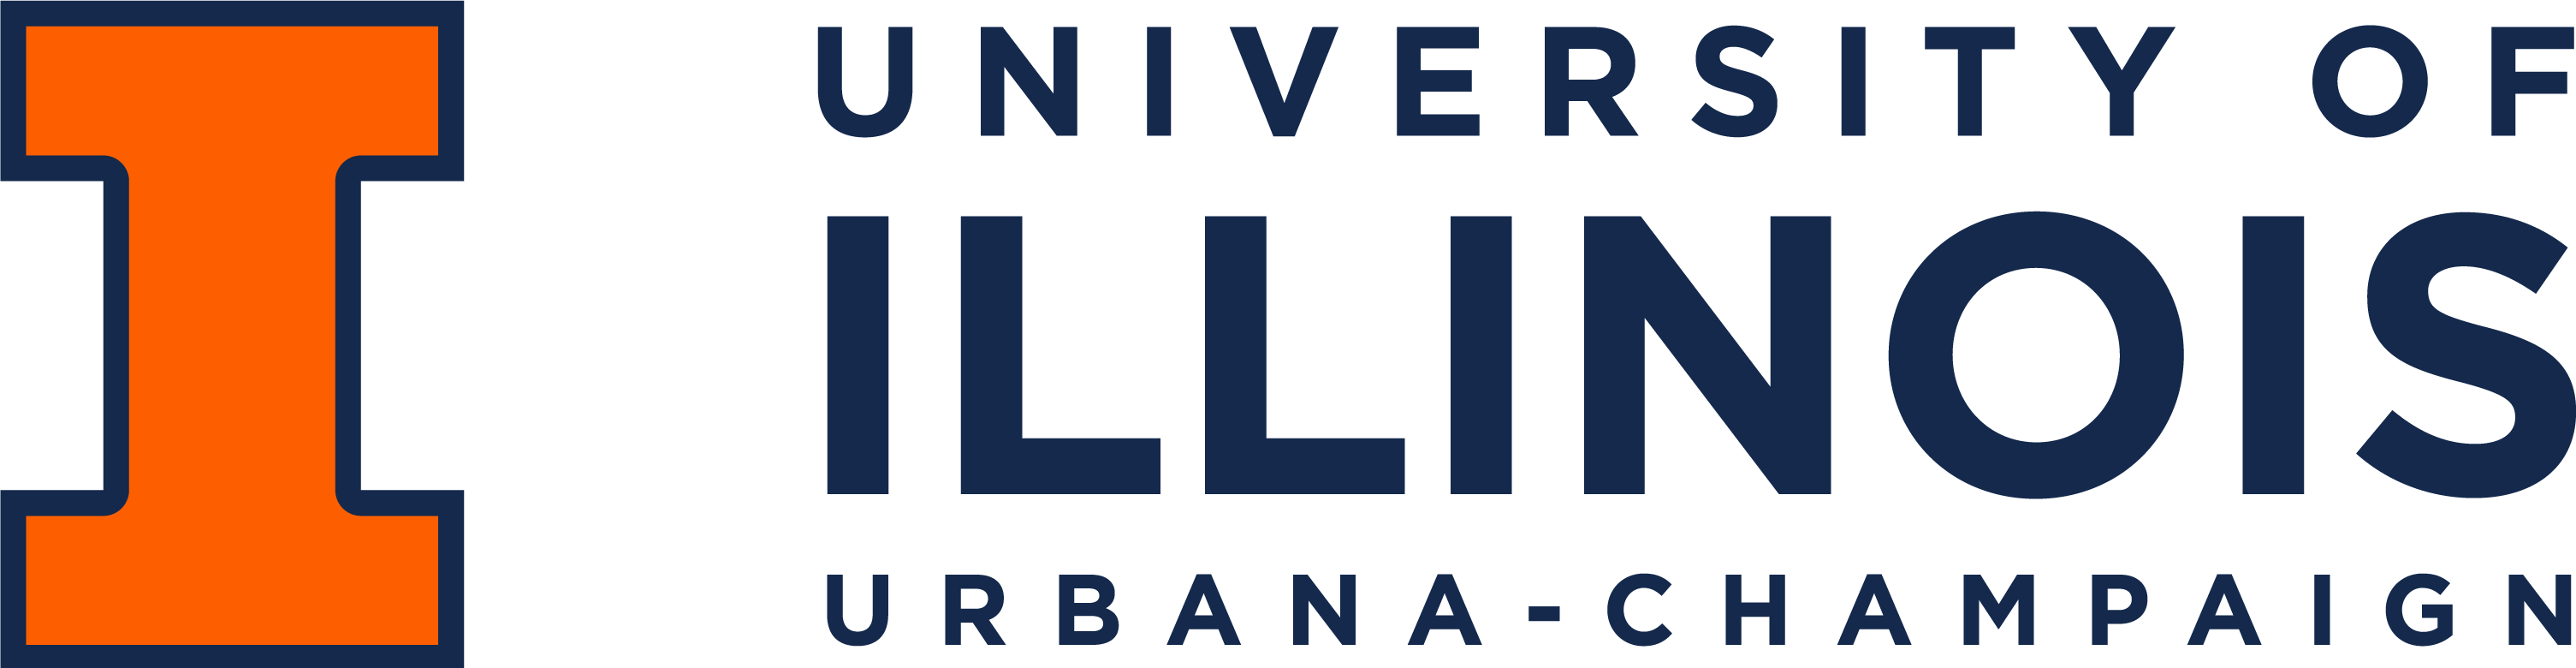 University of Illinois Wordmark